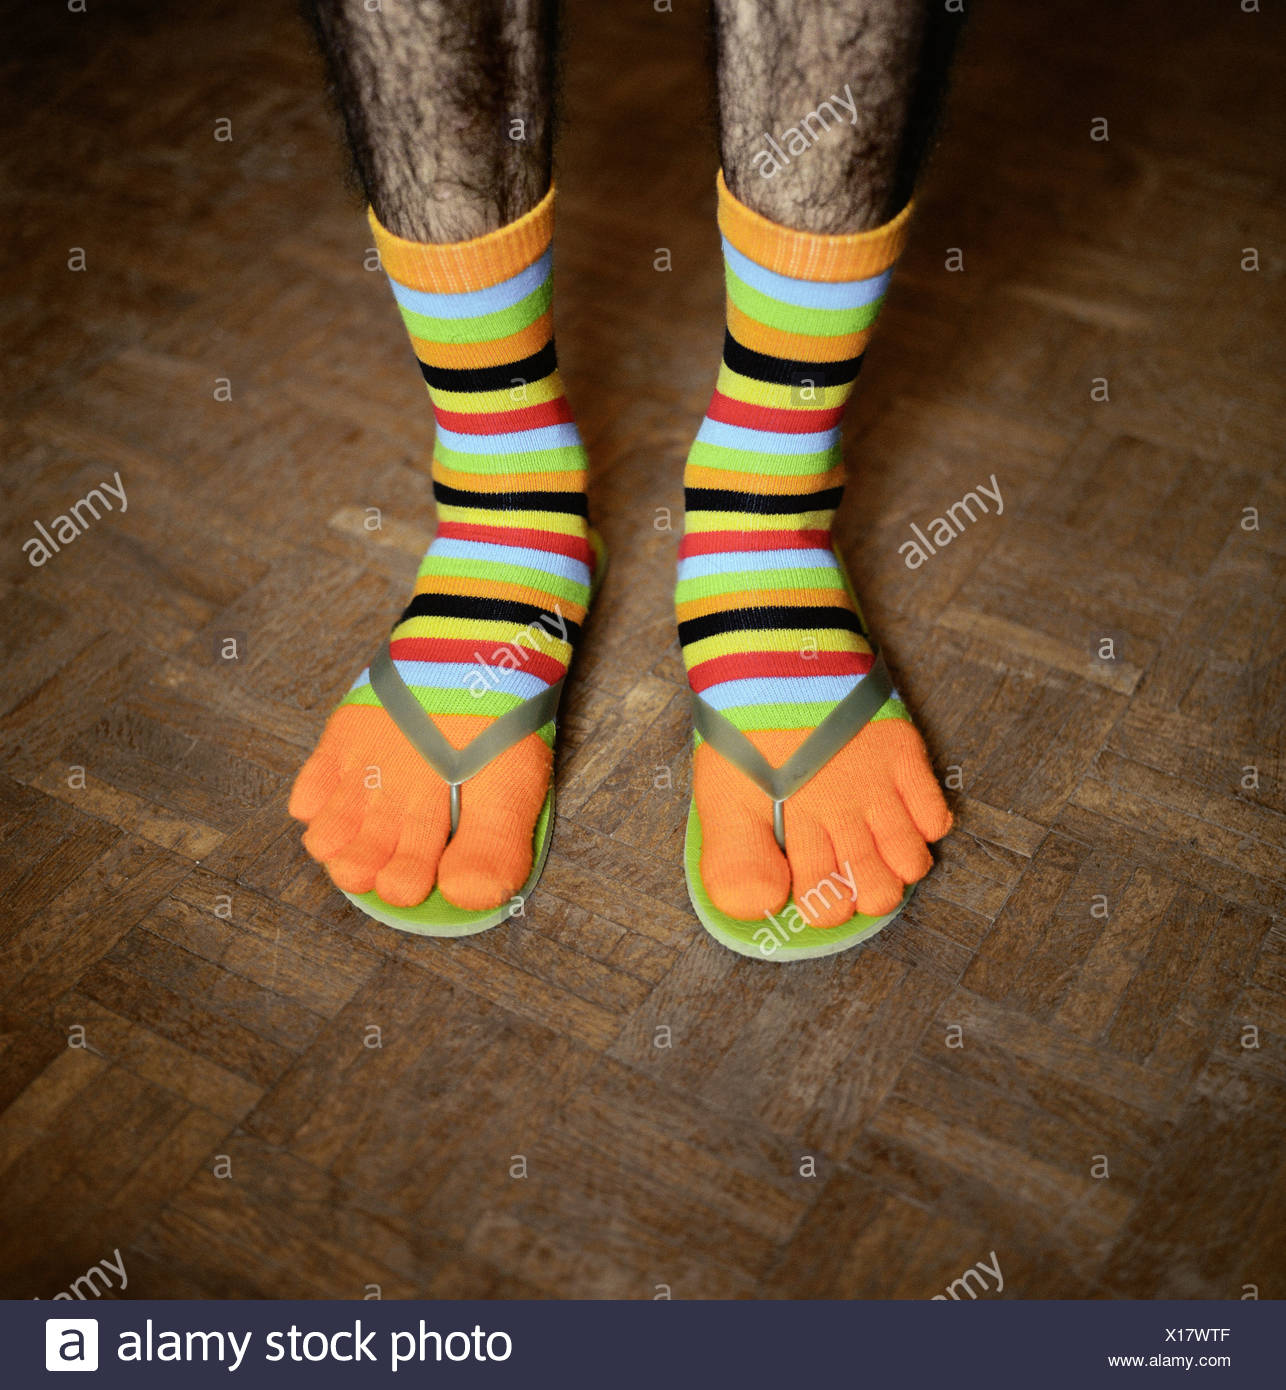 socks for flip flops